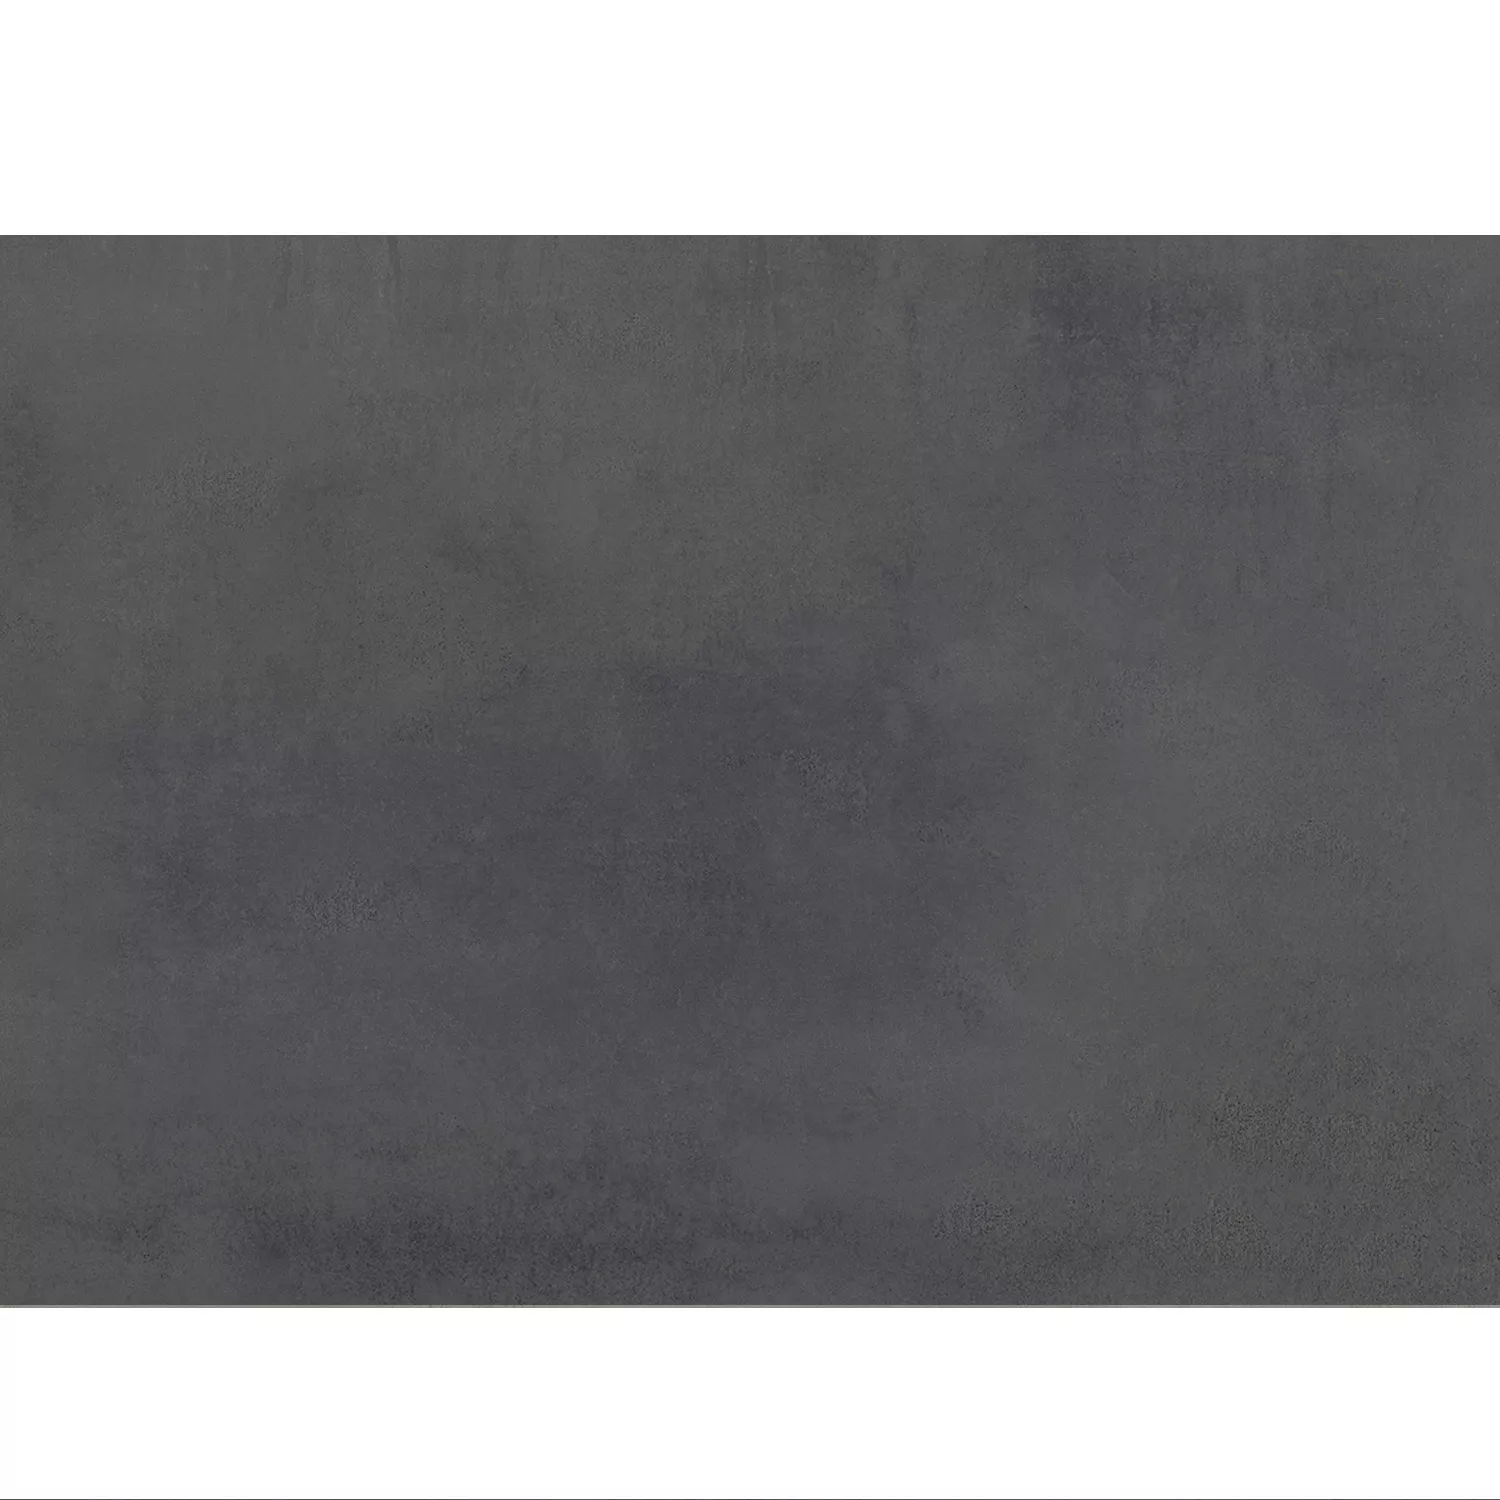 Πρότυπο Πλακάκια Δαπέδου Tycoon Συγκεκριμένη Εμφάνιση R10 Ανθρακίτης 120x260cm